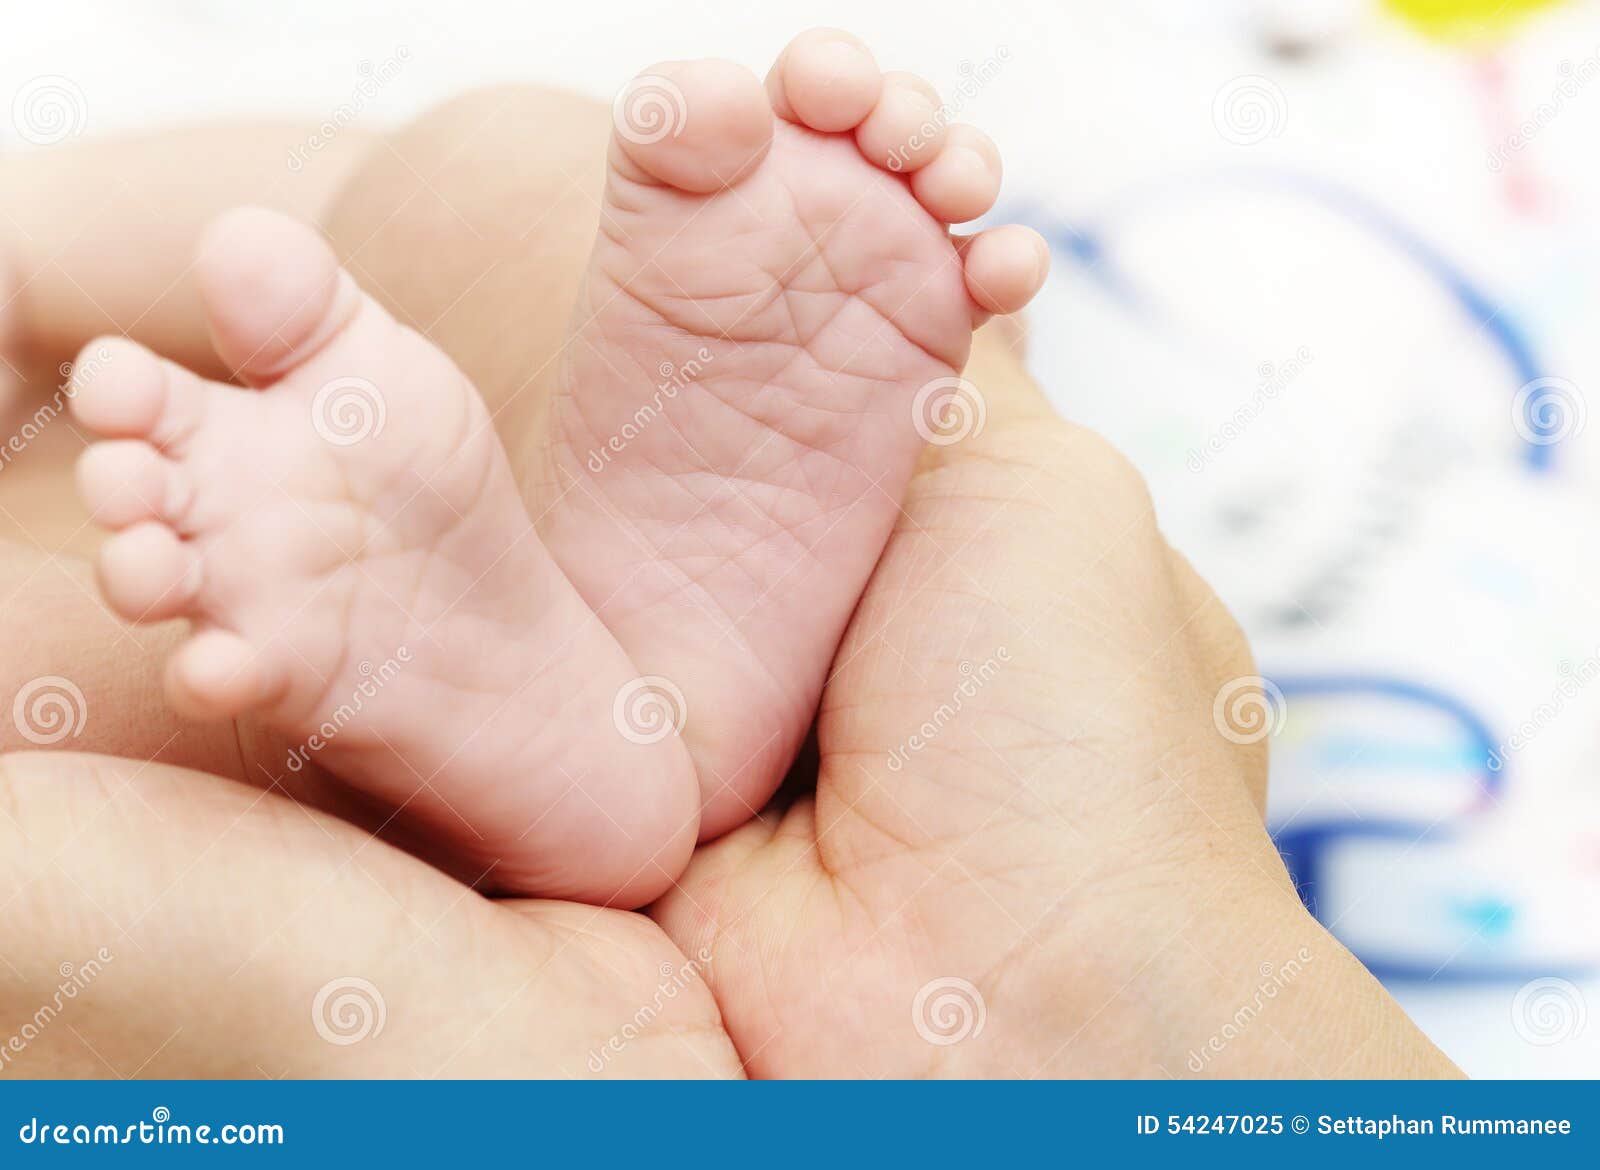 Почему дети поджимают ноги. Пальчики у новорожденных на ногах. Маленькие ножки. Ребенок поджимает пальчики на ножках.